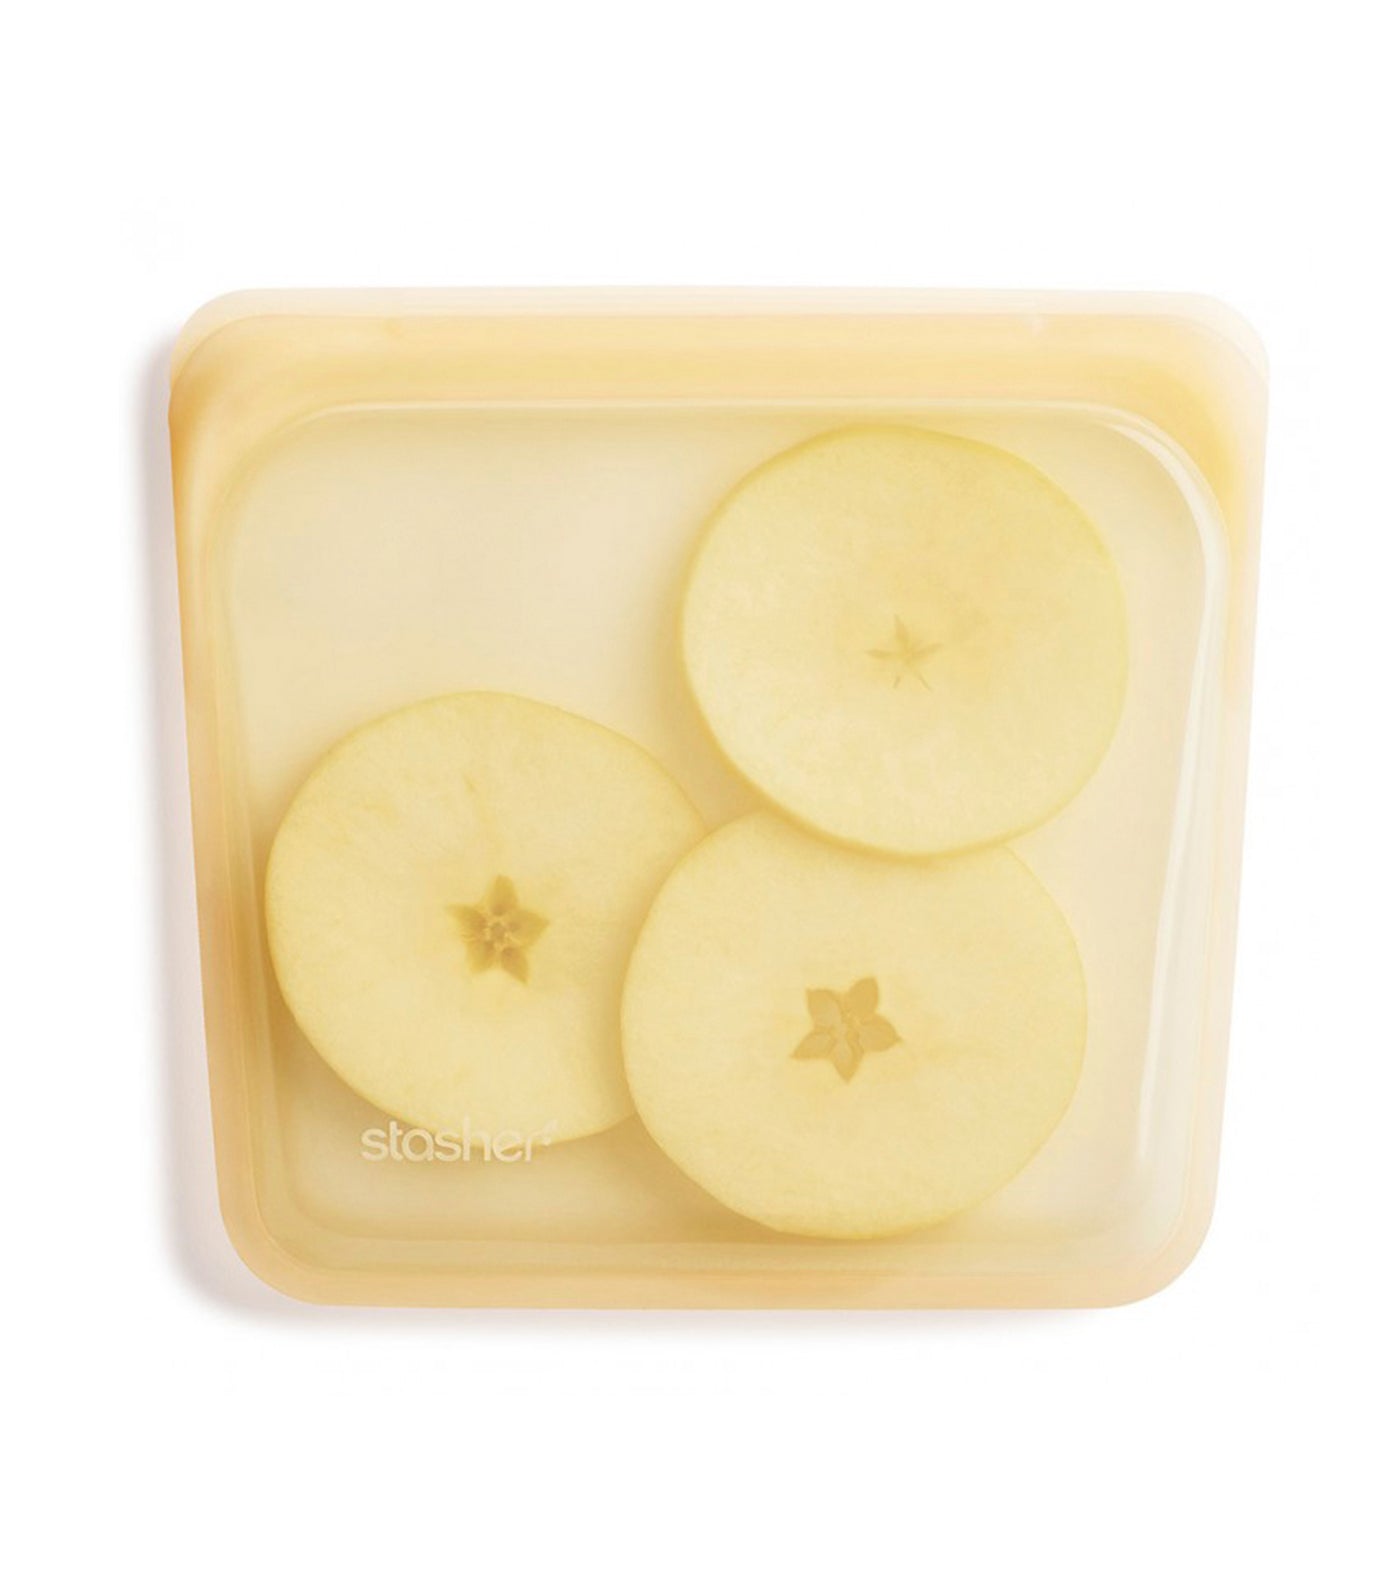 stasher reusable silicone sandwich bag - pineapple